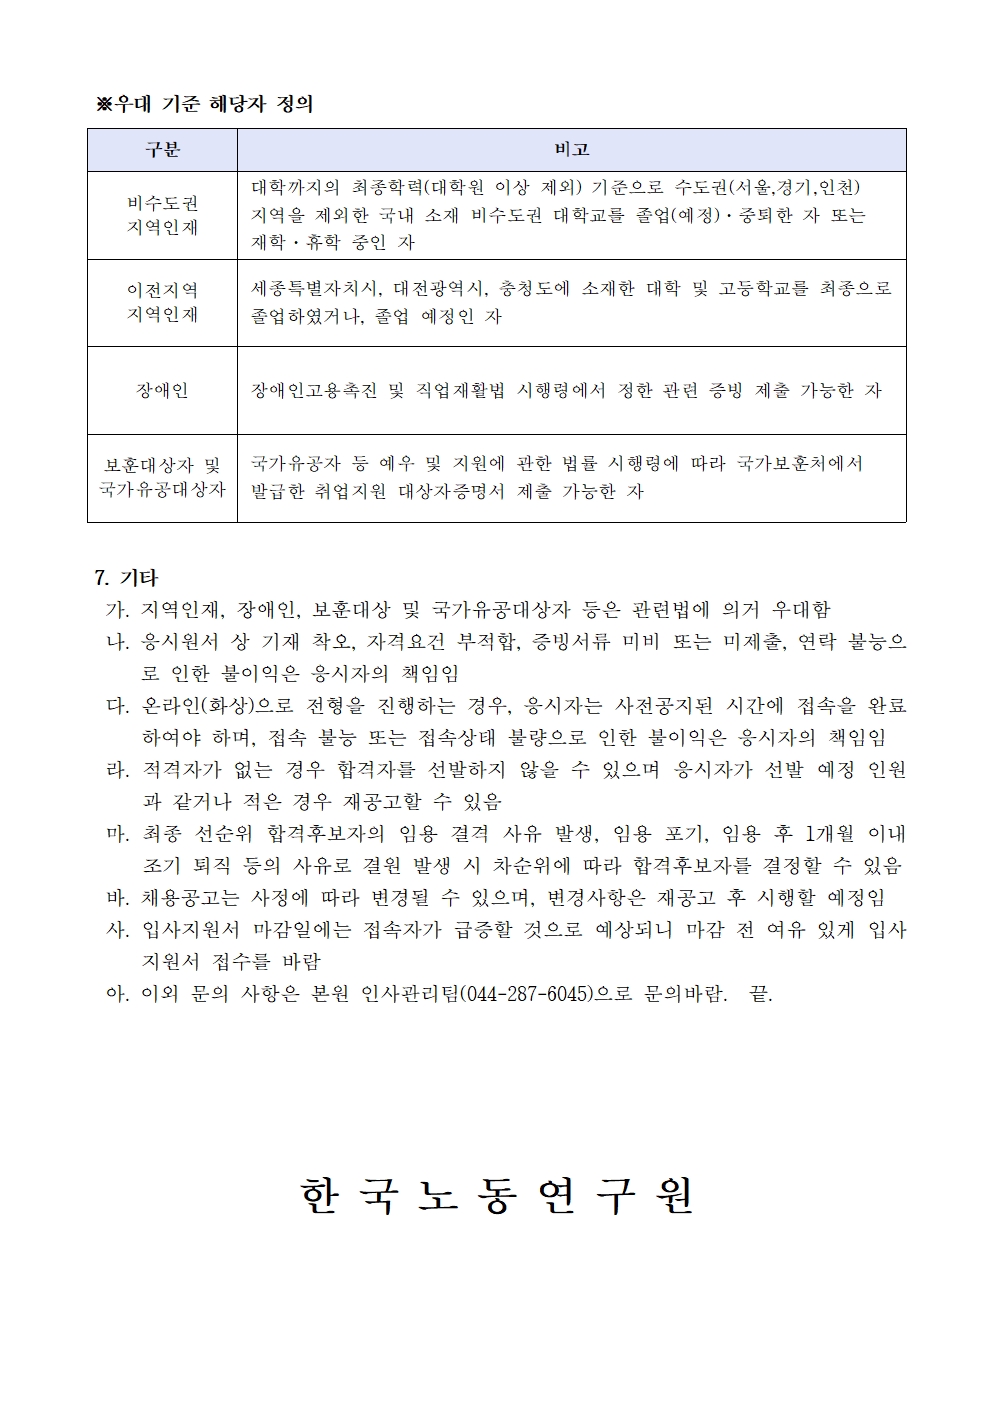 한국노동연구원 연구위원 채용공고 4 | 자세한 내용은 하단의 첨부파일을 참조하세요 : 2021-05호 연구위원 채용 공고문.pdf